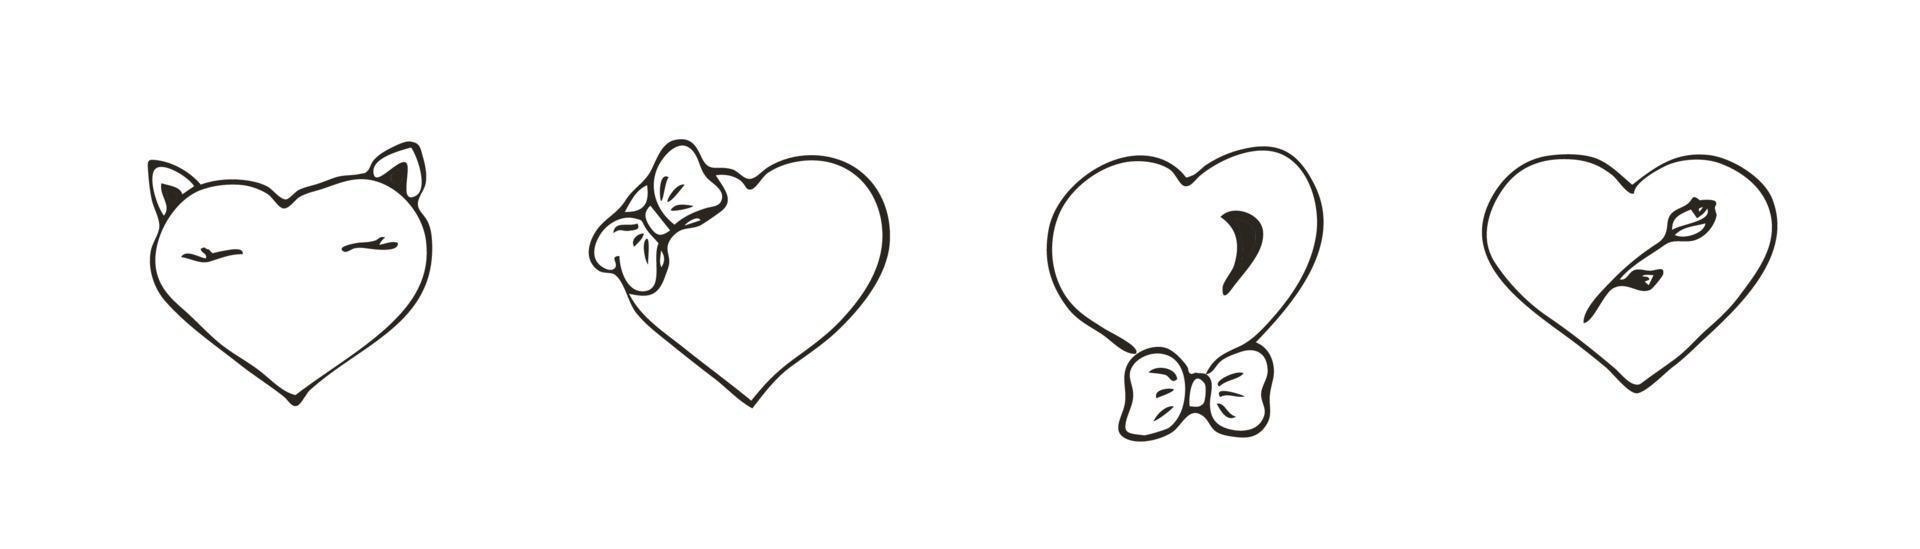 conjunto de icono de corazón de doodle. símbolo de amor con arco y rosa. Ilustración gráfica de vector dibujado a mano lindo aislado sobre fondo blanco. signo de estilo de contorno simple. patrón de dibujo de arte